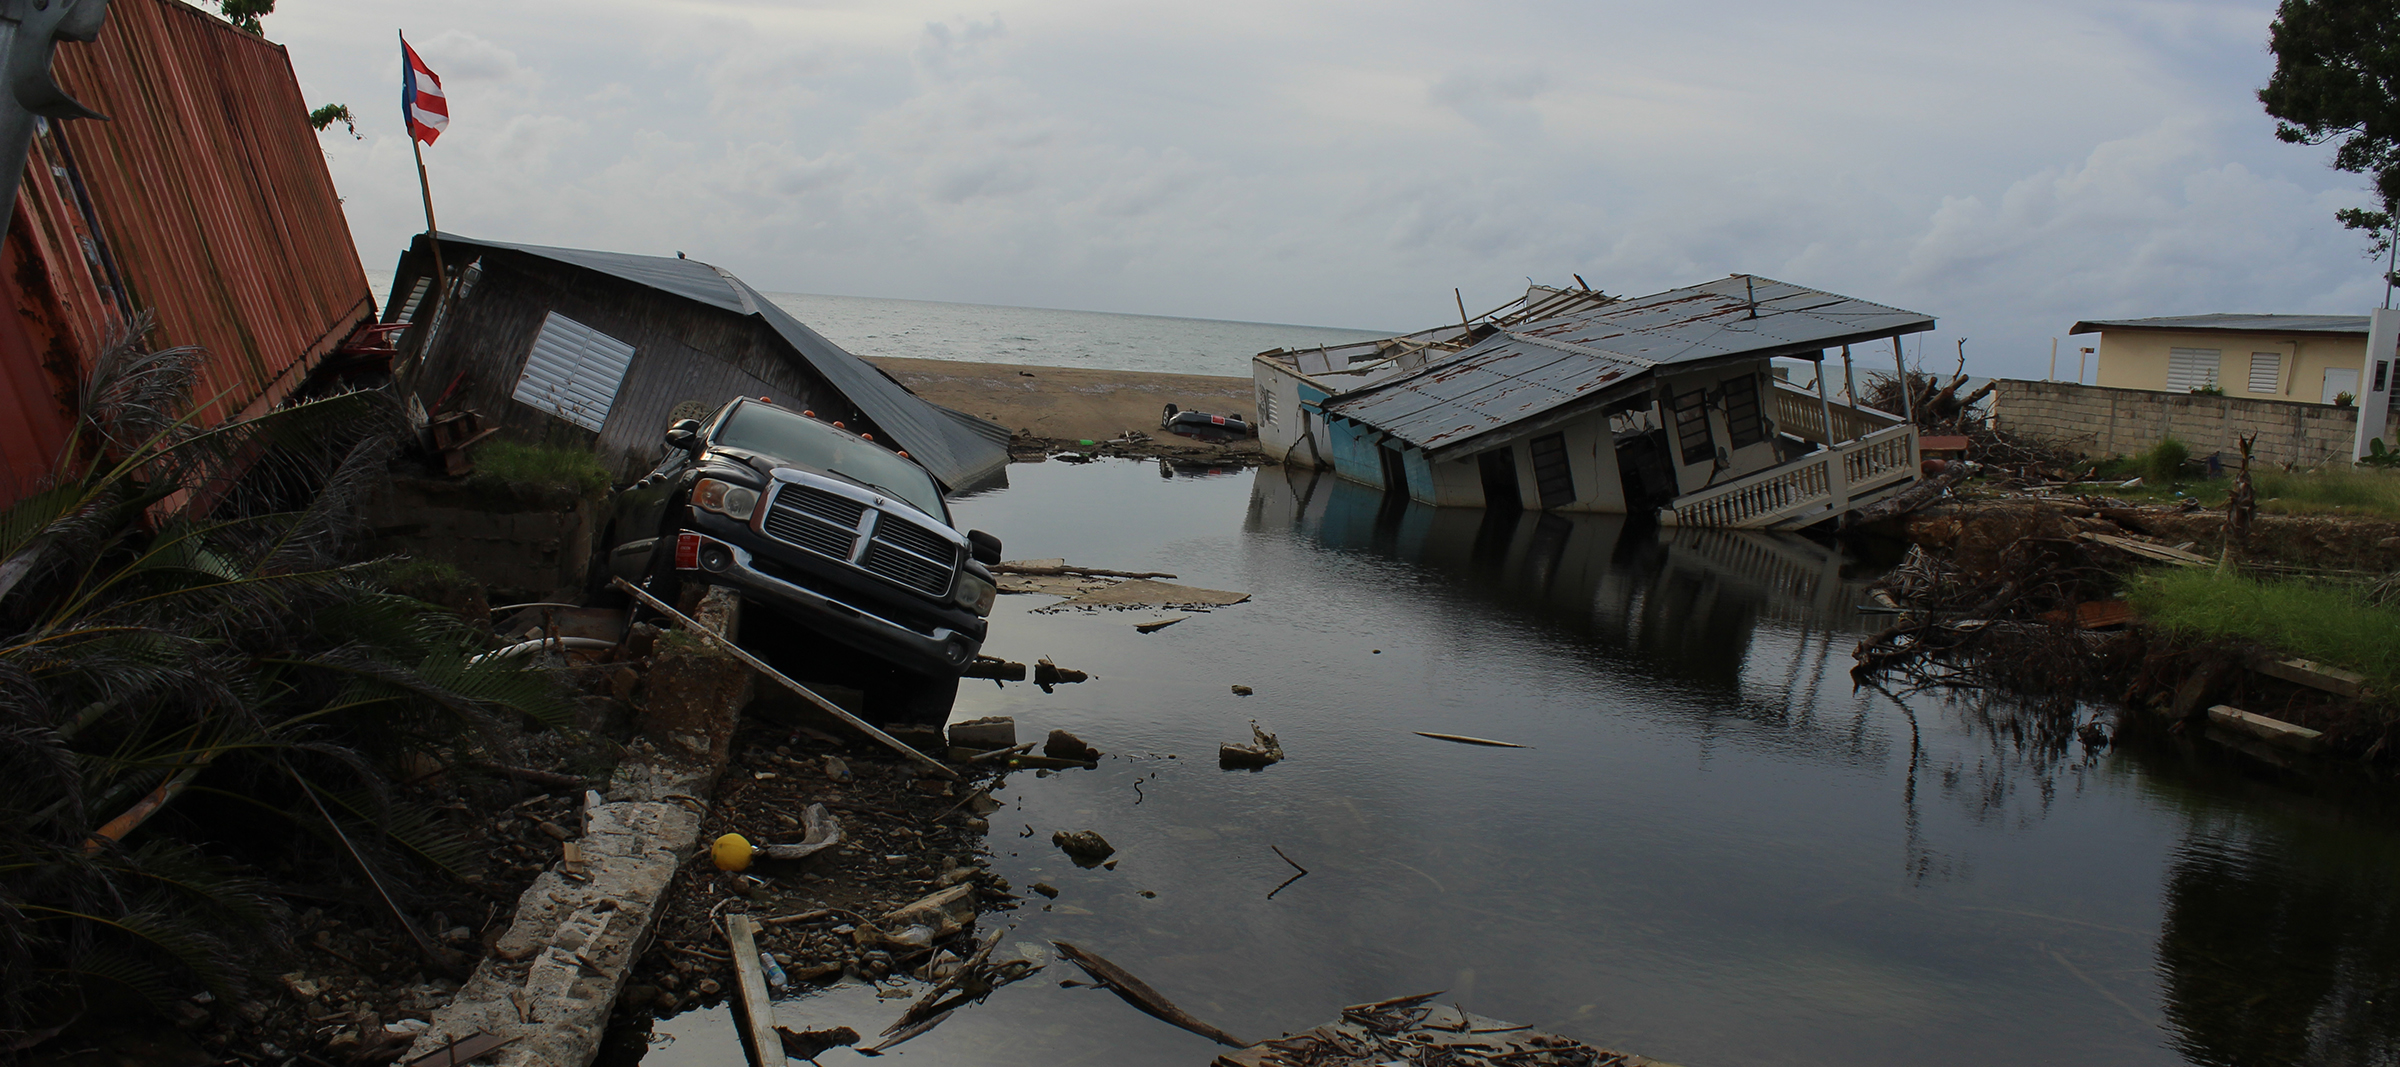 Imagen de la destrucción en Puerto Rico causada por el huracán María, noviembre del 2017 – Foto por Rick Jones